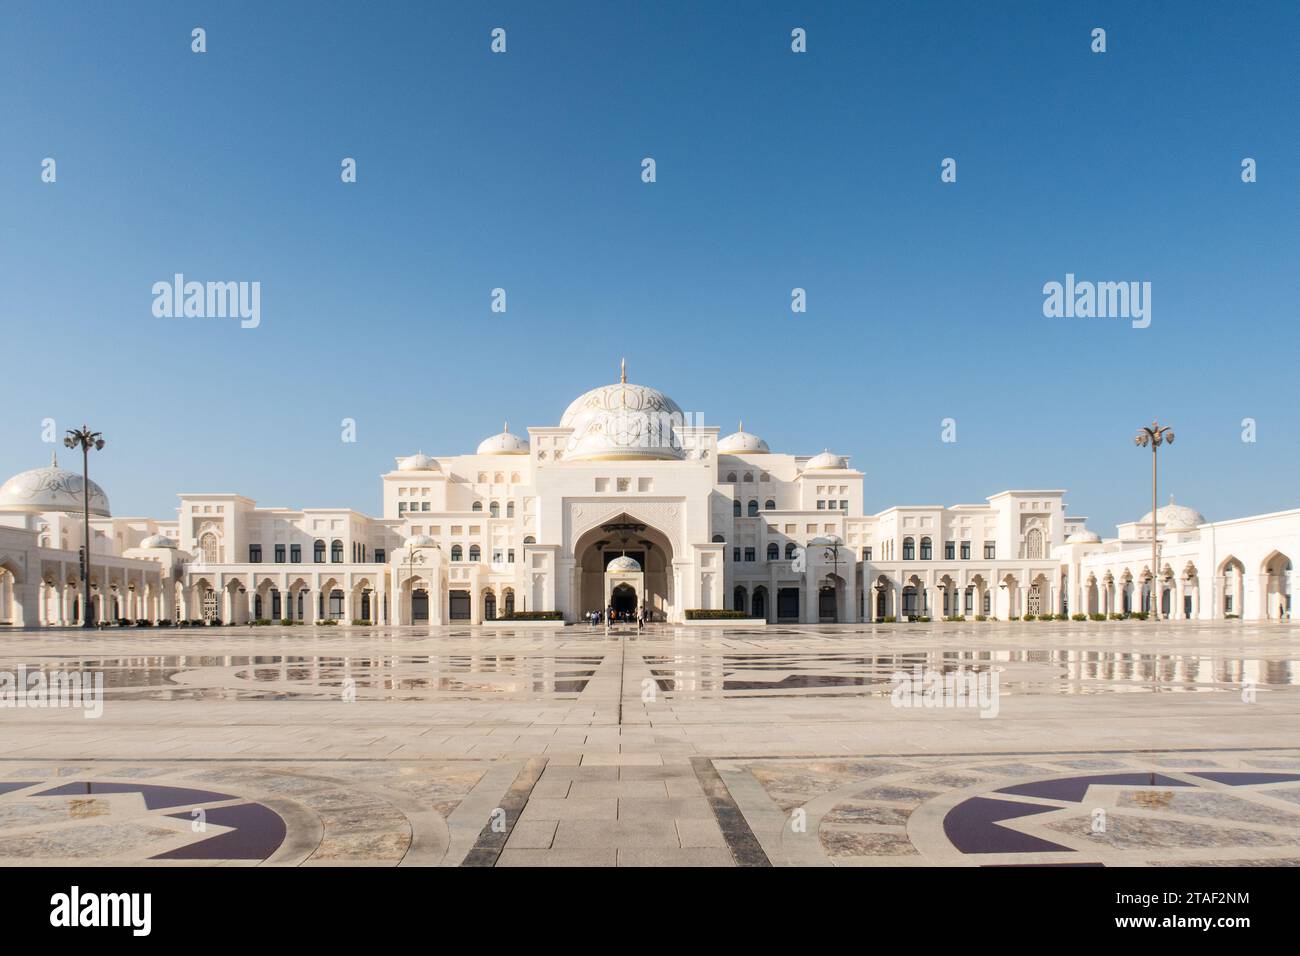 Abu Dhabi, VAE, 08.02.2020. Präsidentenpalast der Vereinigten Arabischen Emirate Qasr Al Watan, Außenansicht symmetrischer Blick vom Eingang. Stockfoto